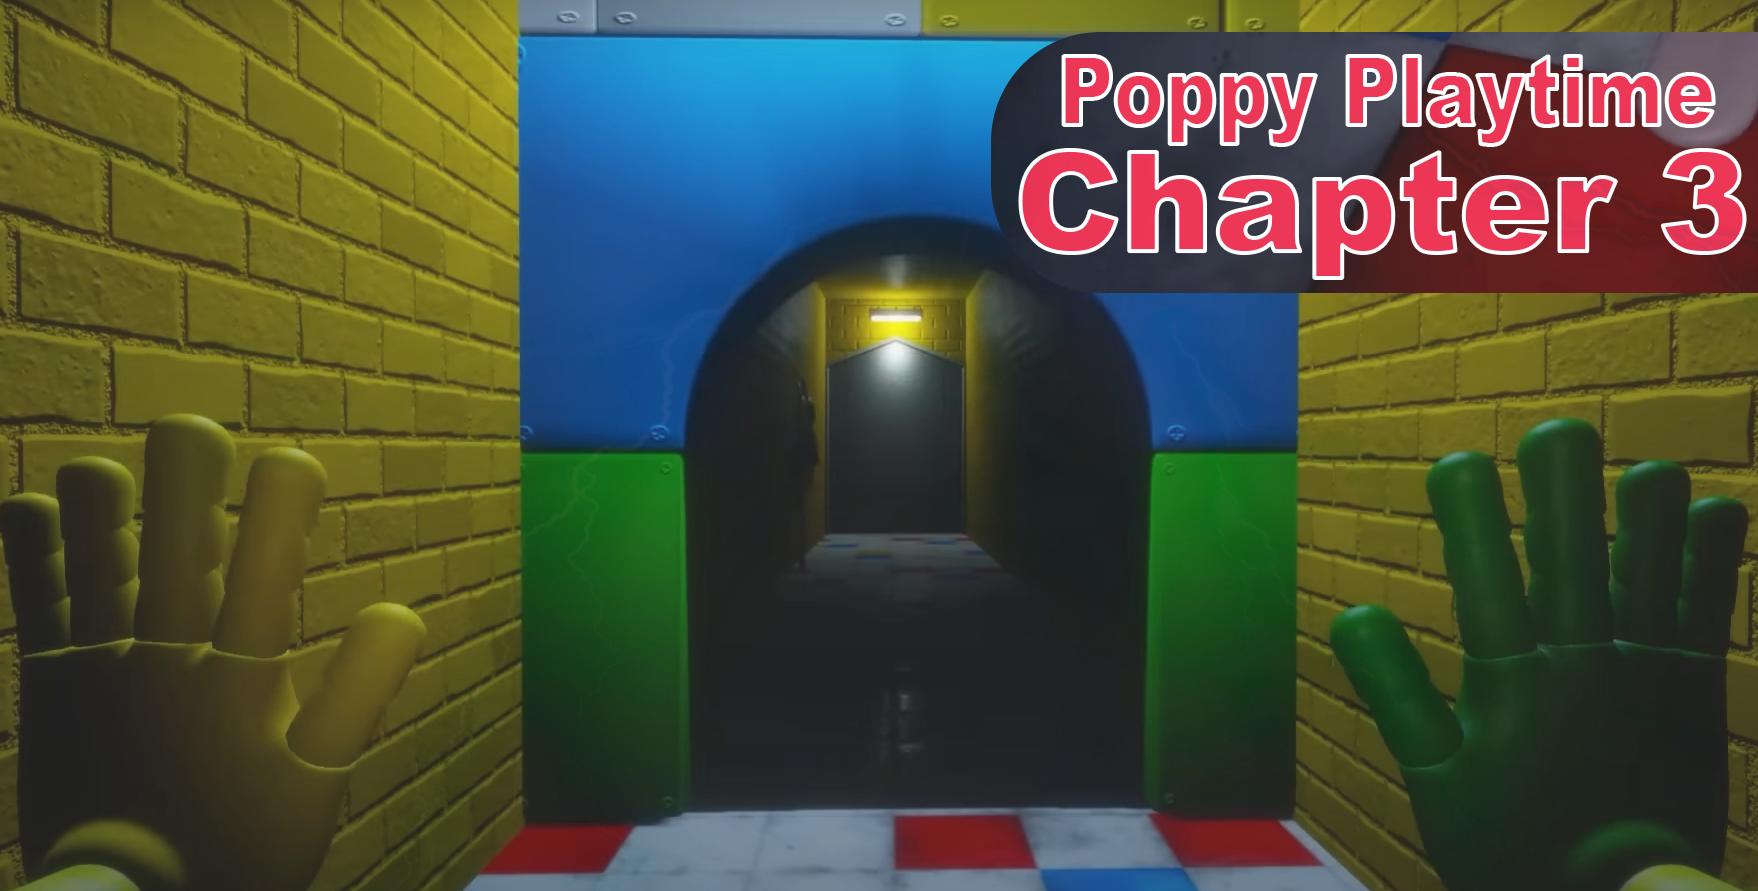 Poppy Playtime Capítulo 3 está logo atrás de você